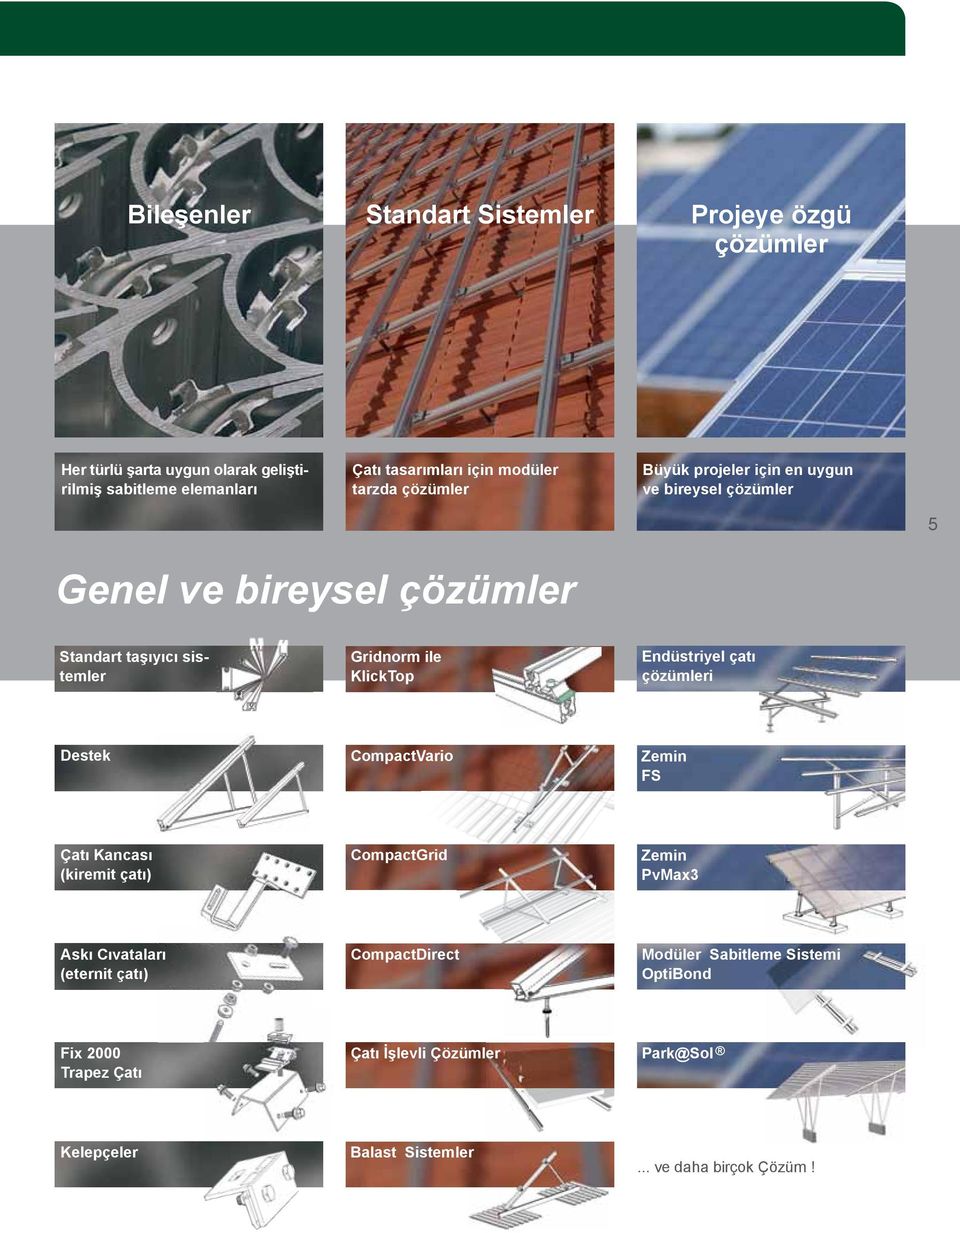 Endüstriyel çatı çözümleri Destek CompactVario Zemin FS Çatı Kancası (kiremit çatı) CompactGrid Zemin PvMax3 Askı Cıvataları (eternit çatı)